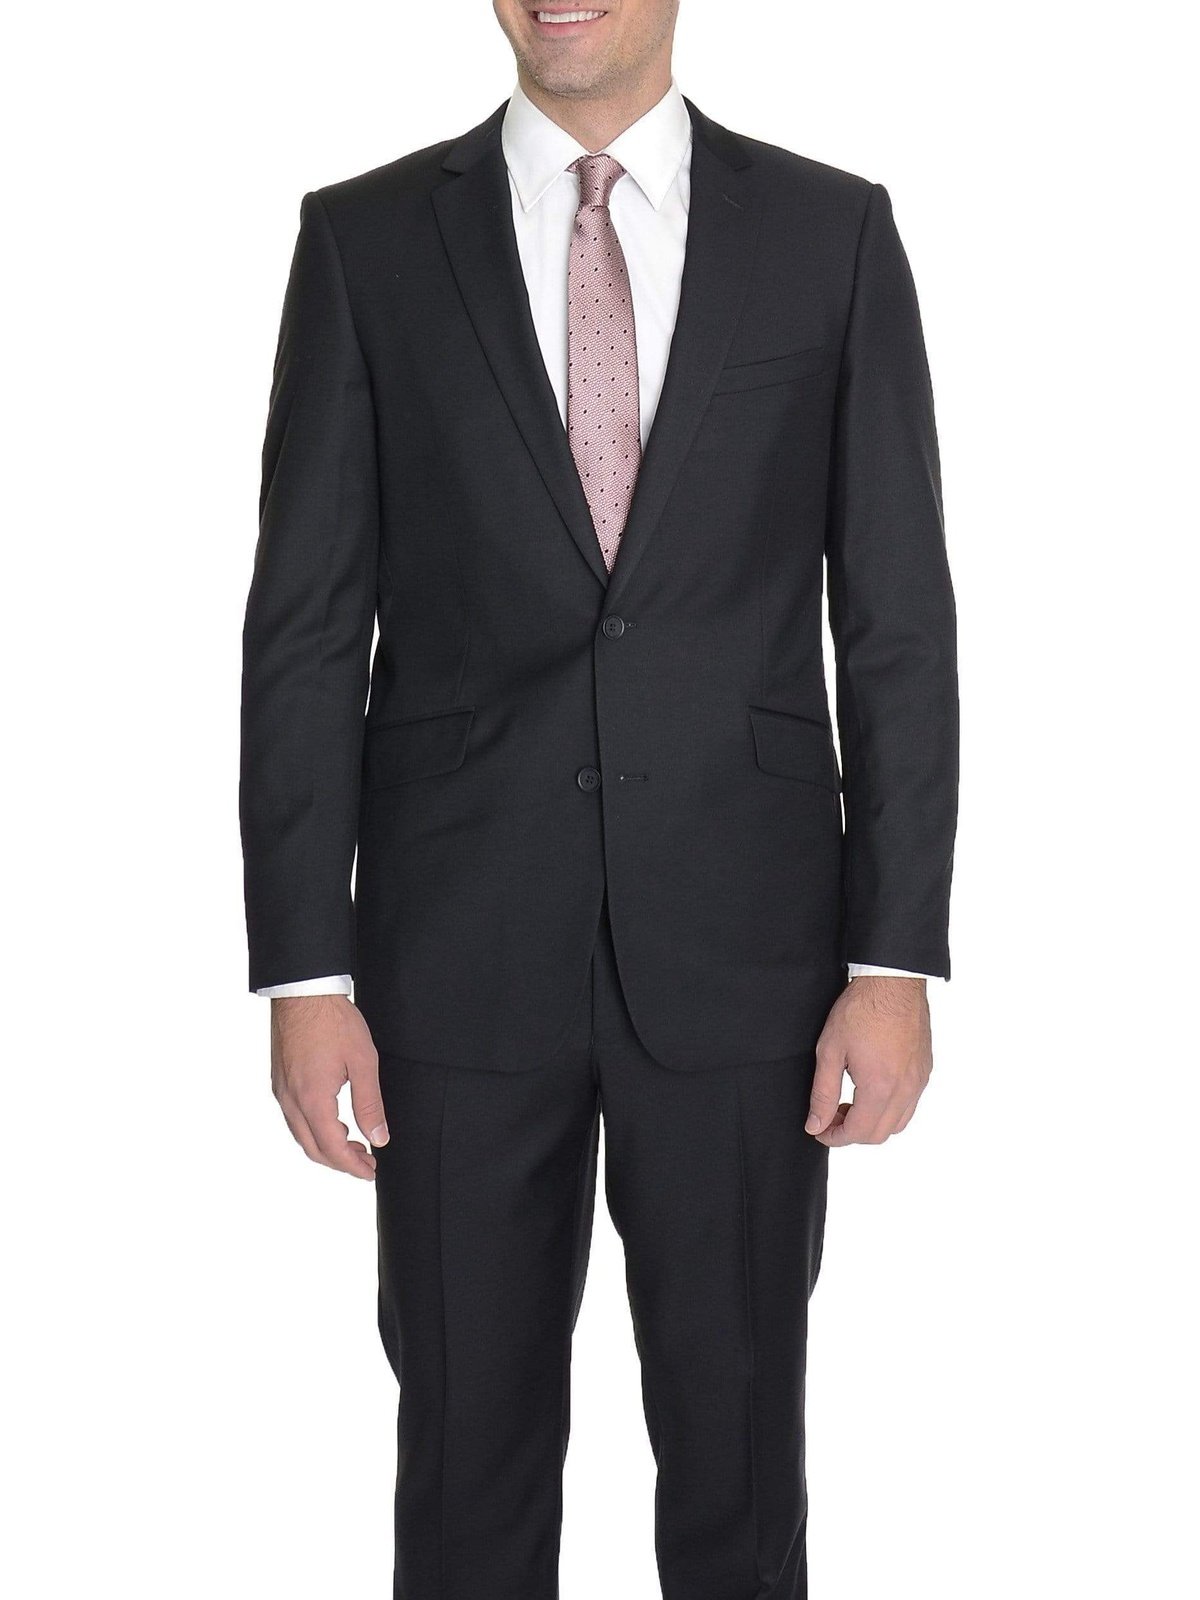 Raphael TWO PIECE SUITS 34S Men&#39;s Raphael Slim Fit Solid Black Two Button Wool 2 Piece Formal Business Suit